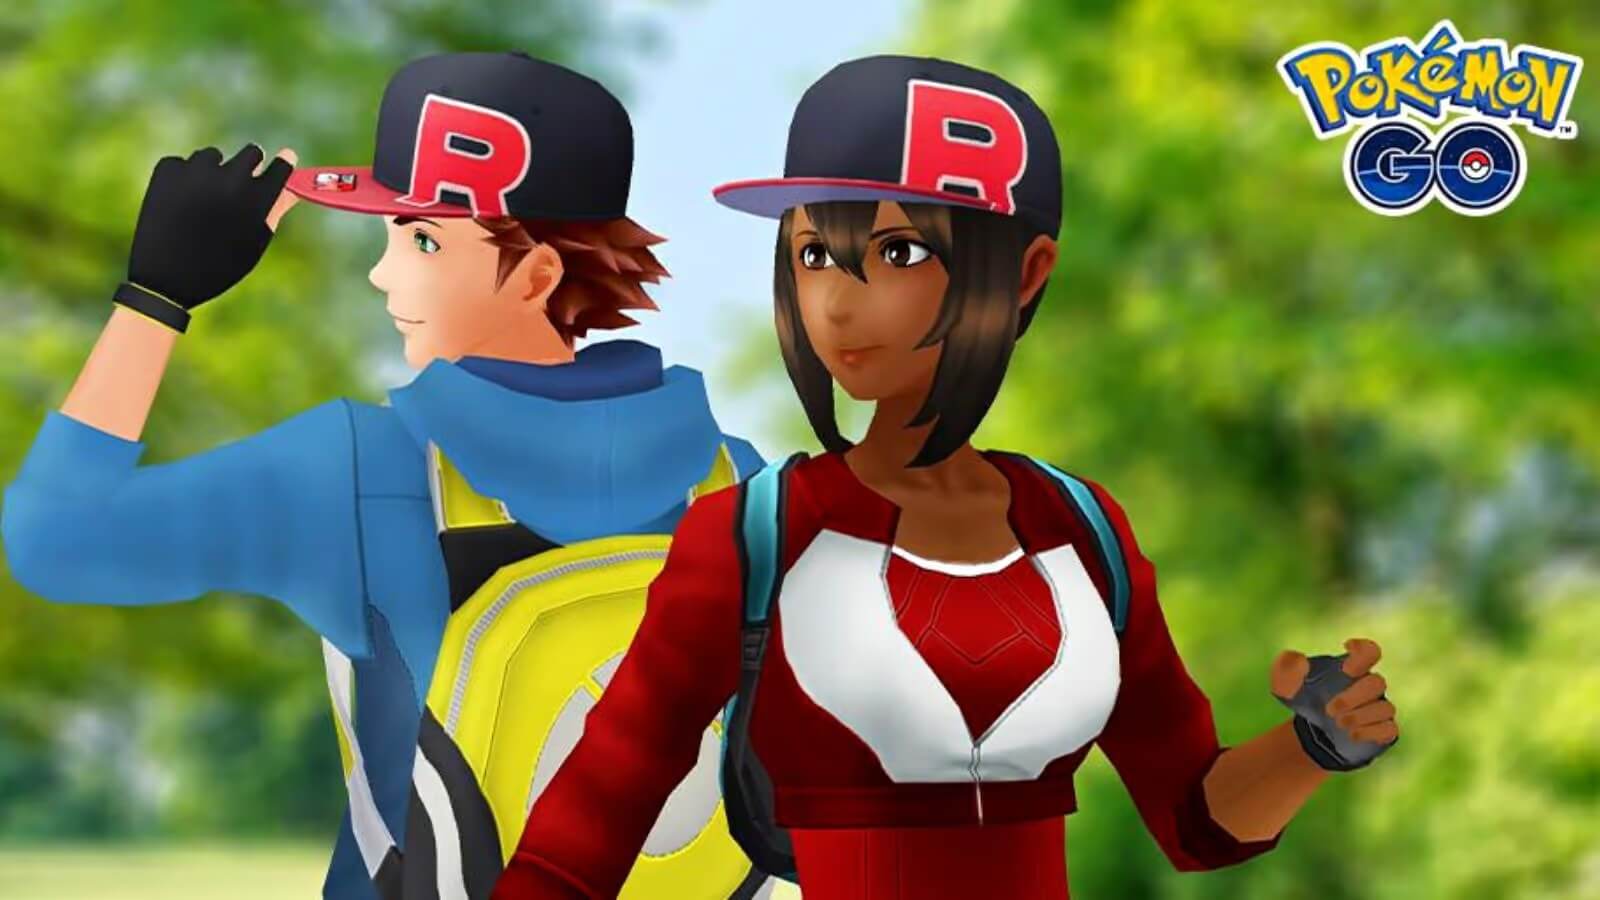 Người chơi choáng vì giao diện avatar mới của Pokémon Go, van xin Niantic thay đổi